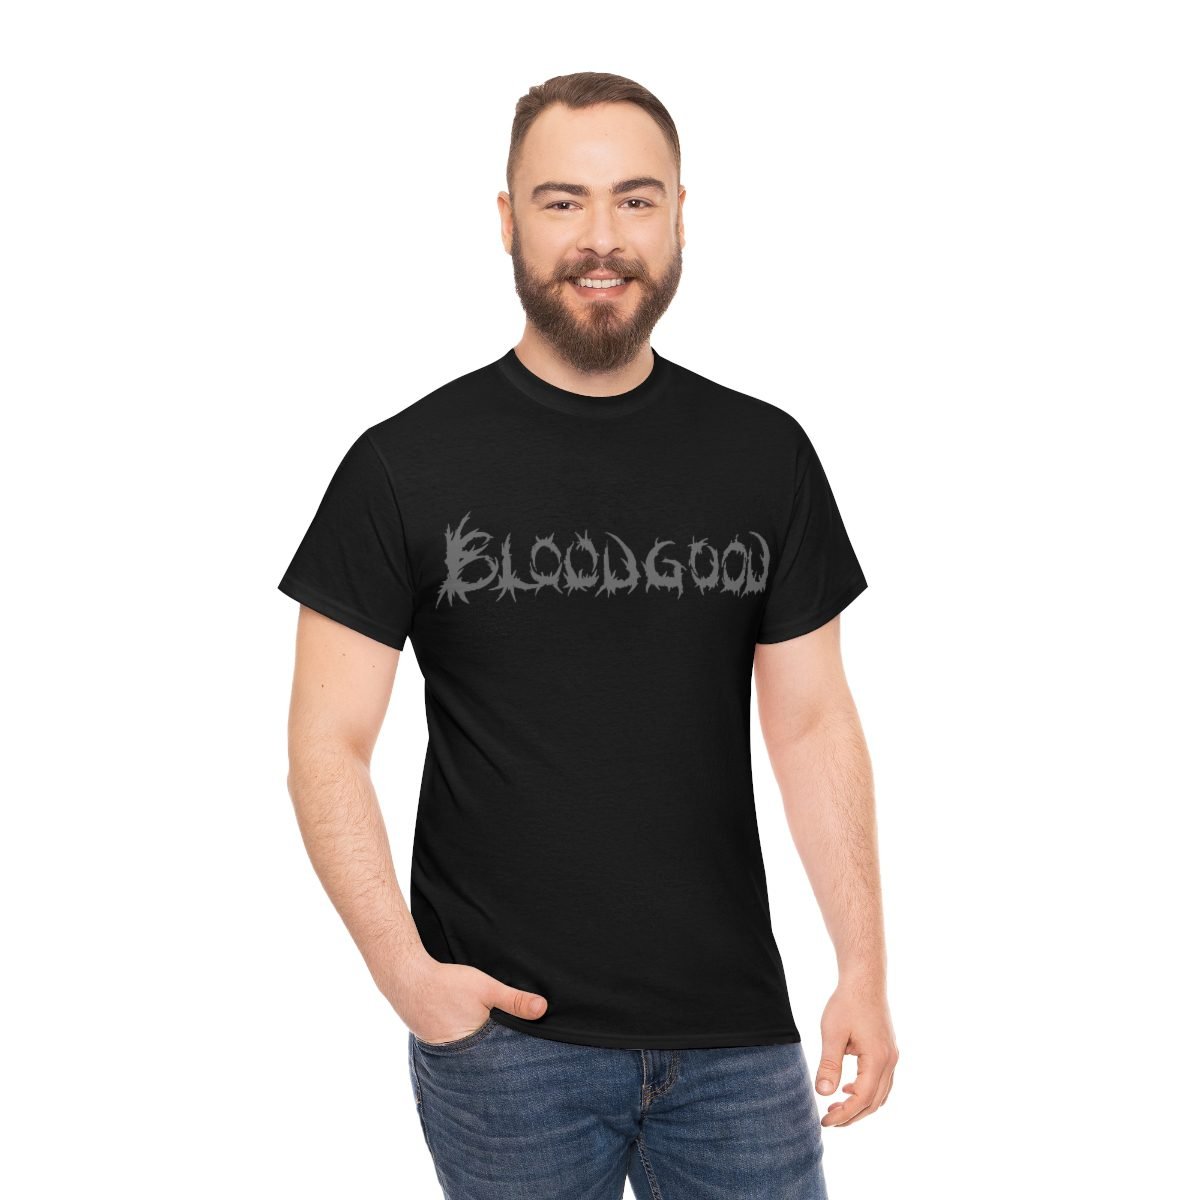 Bloodgood Grey Logo Short Sleeve Tshirt